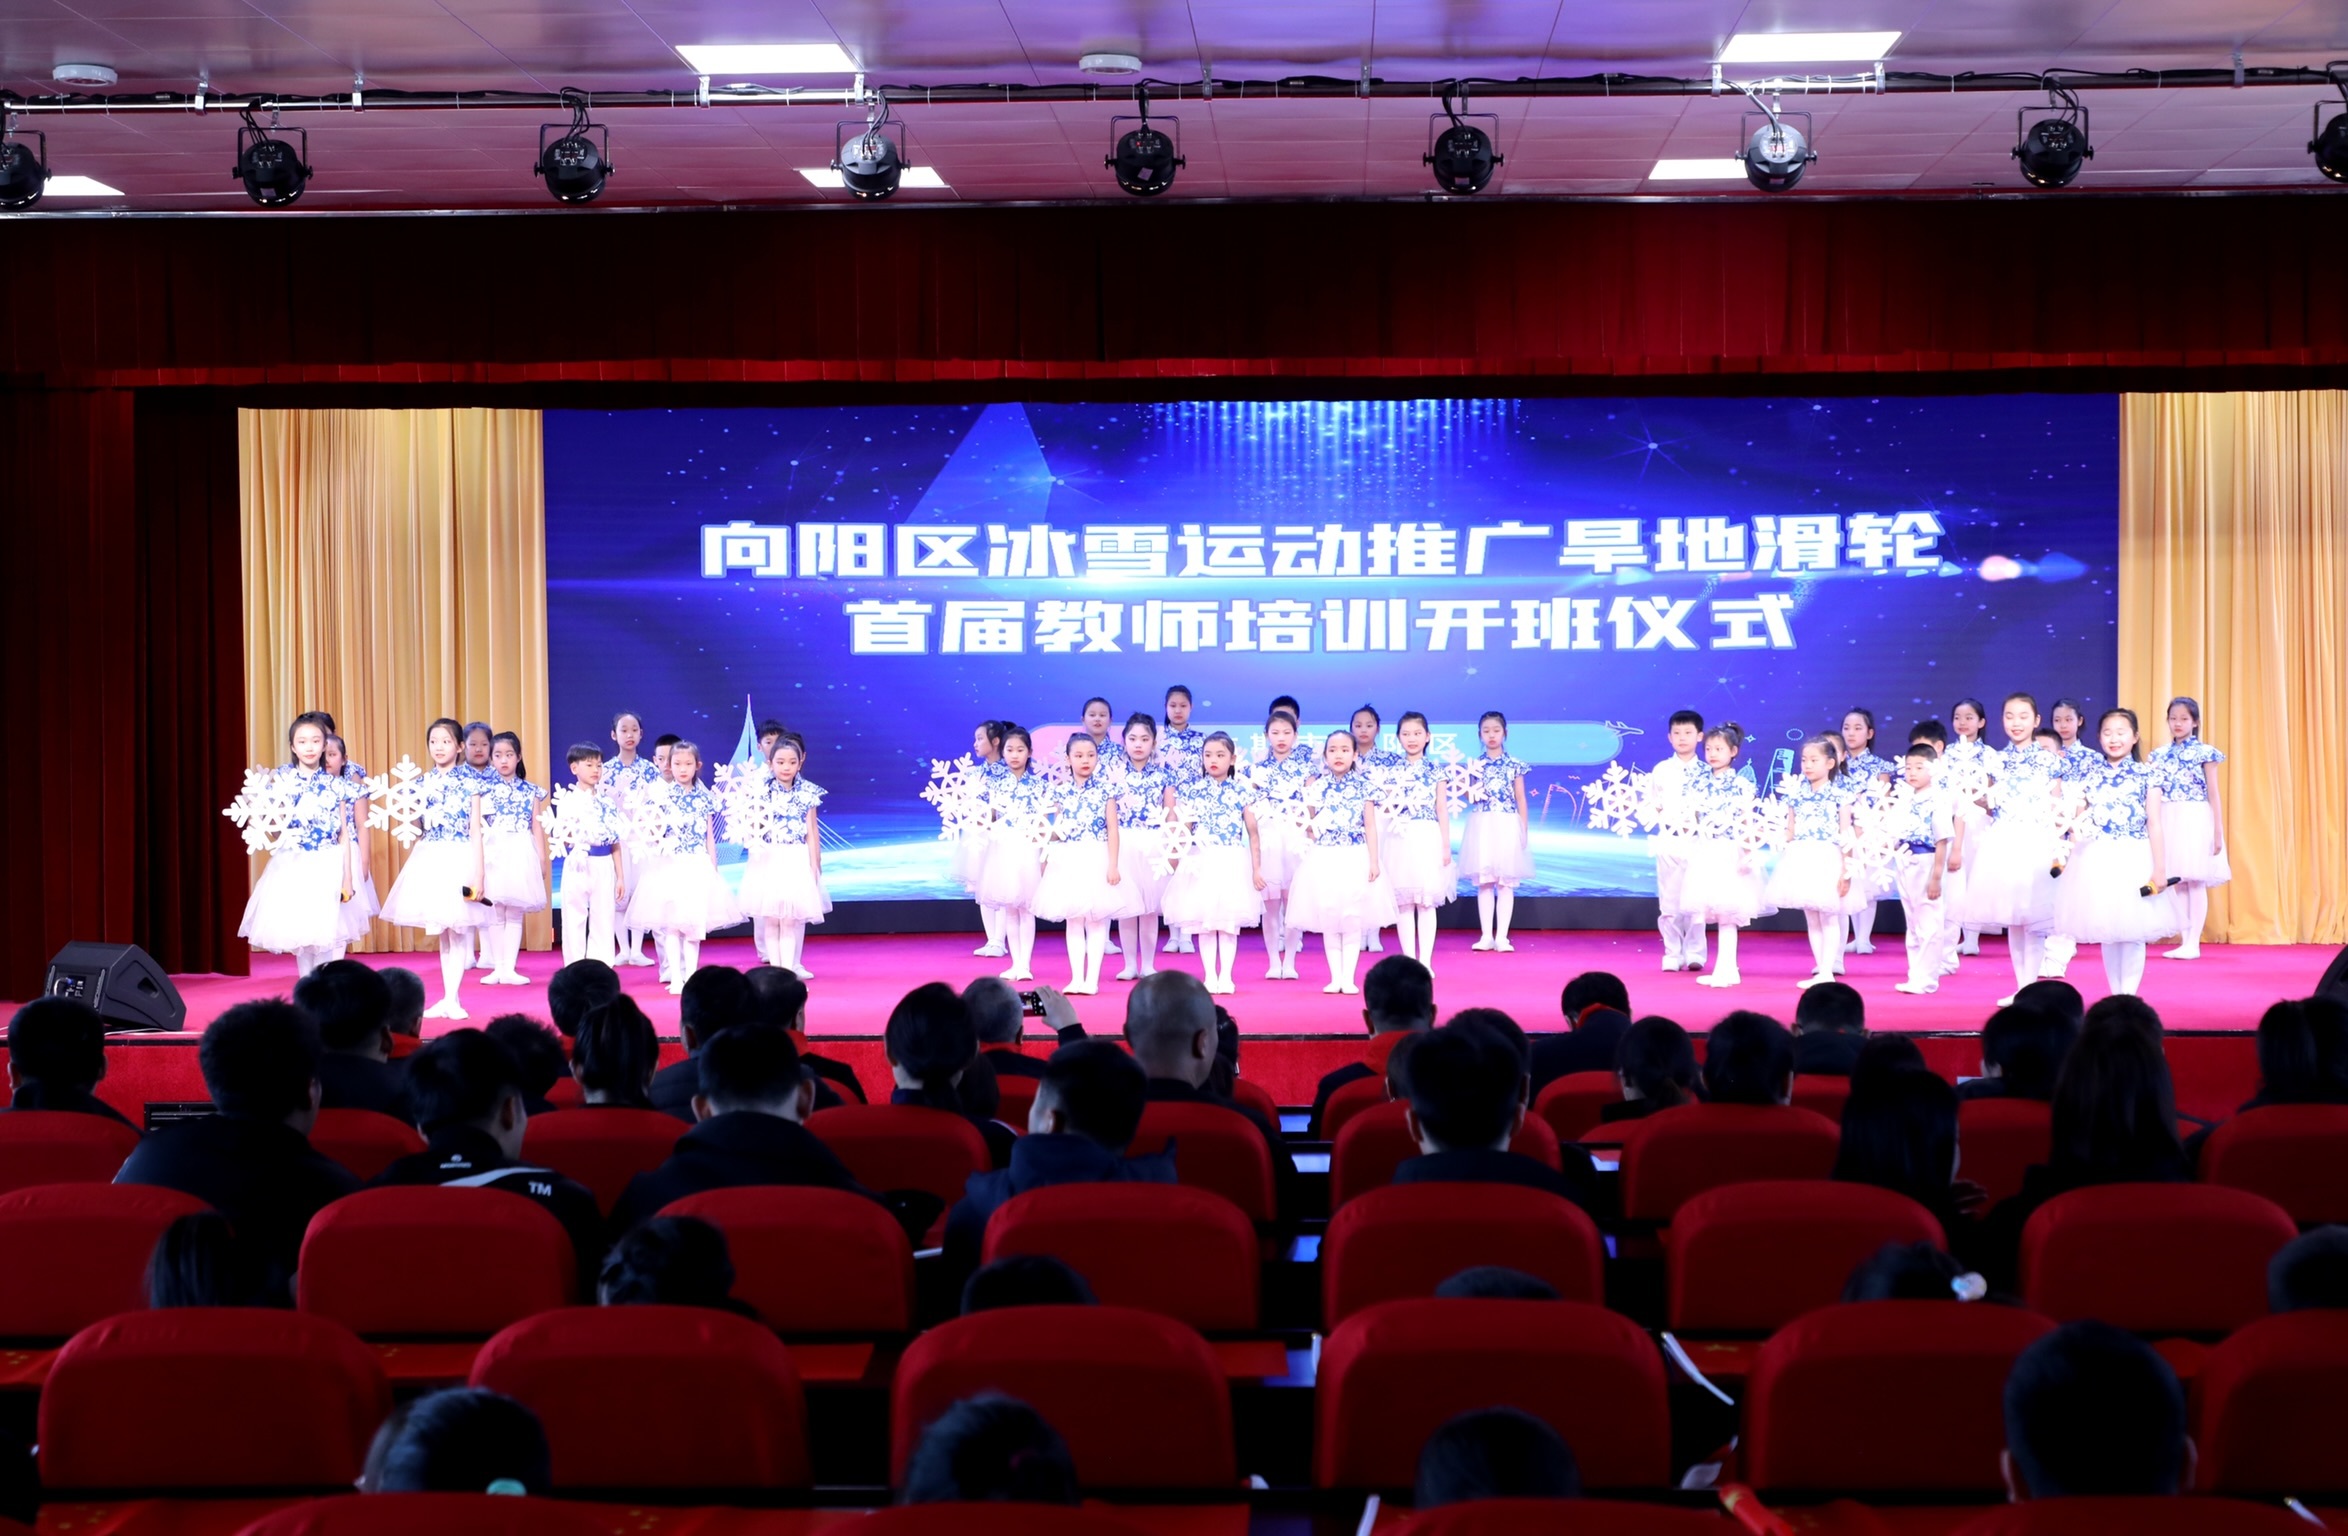 立新教育集团合唱团演唱北京冬奥会开幕式主题歌《雪花》